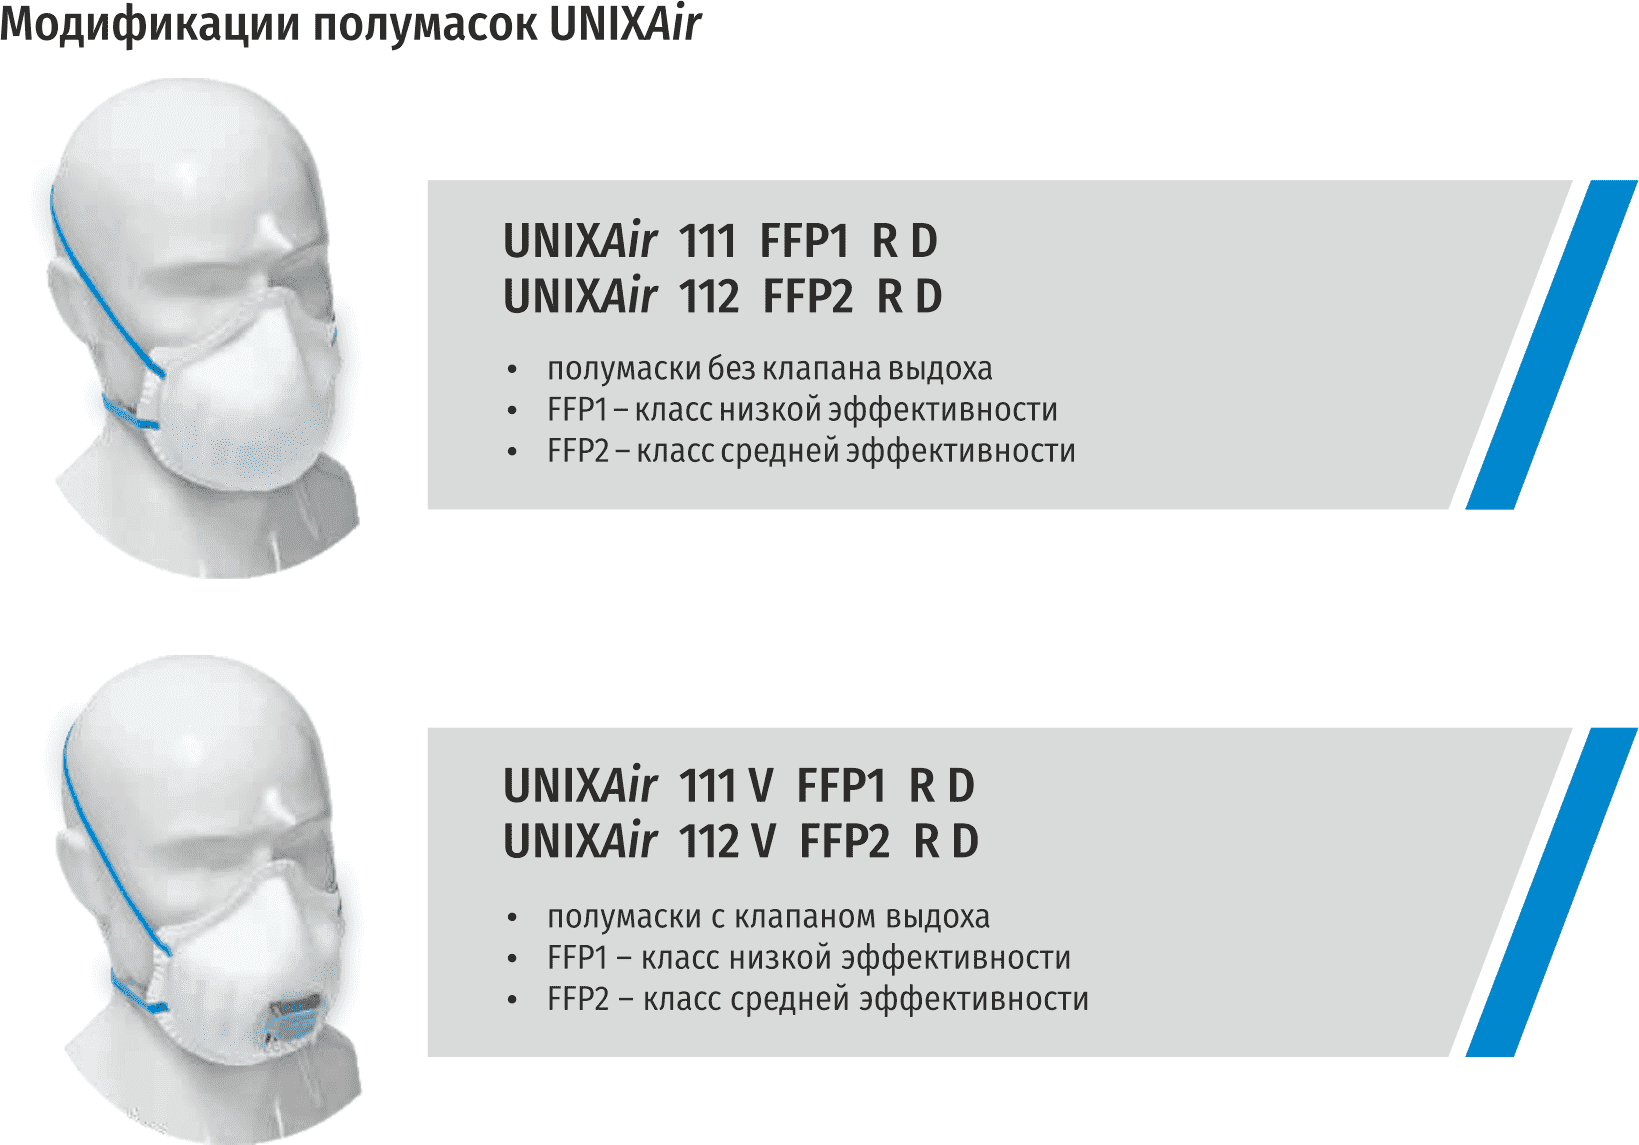 модификации полумасок unixair